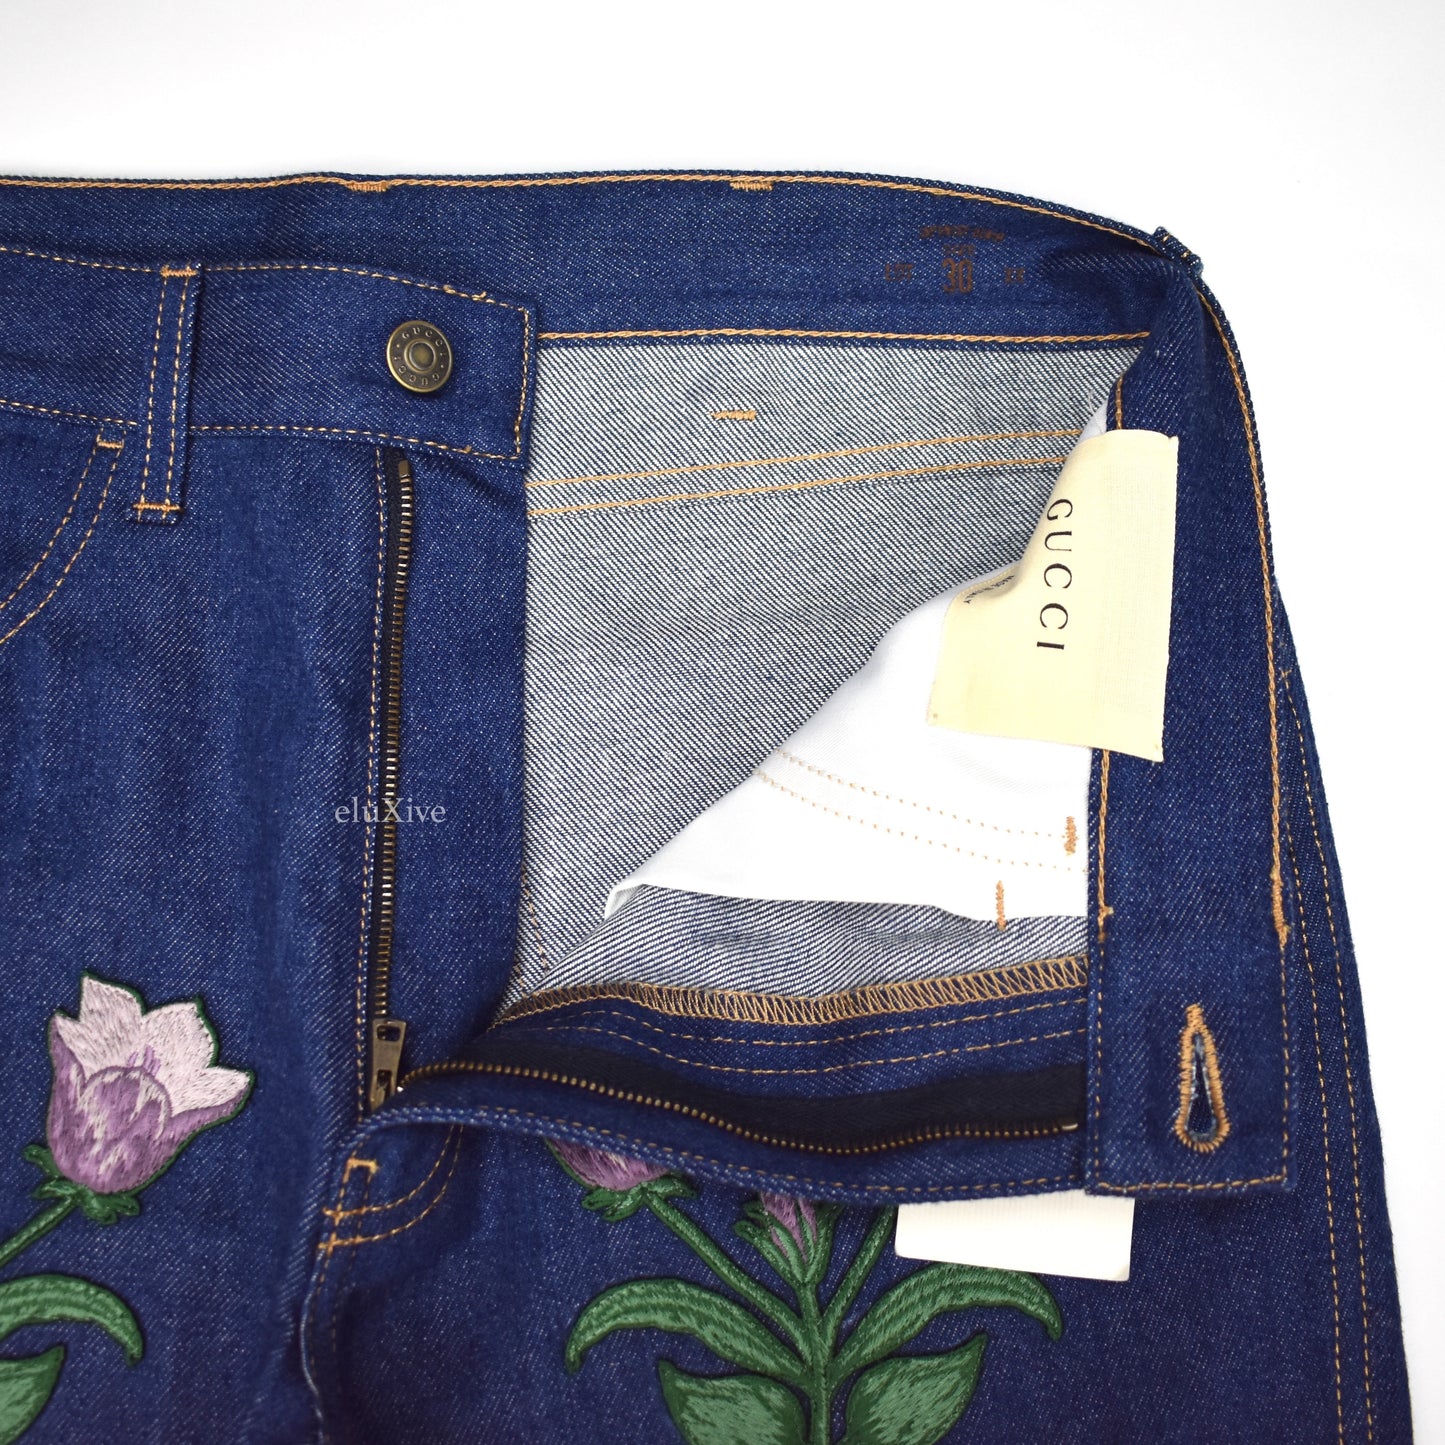 Gucci - Floral Patch Denim Jeans